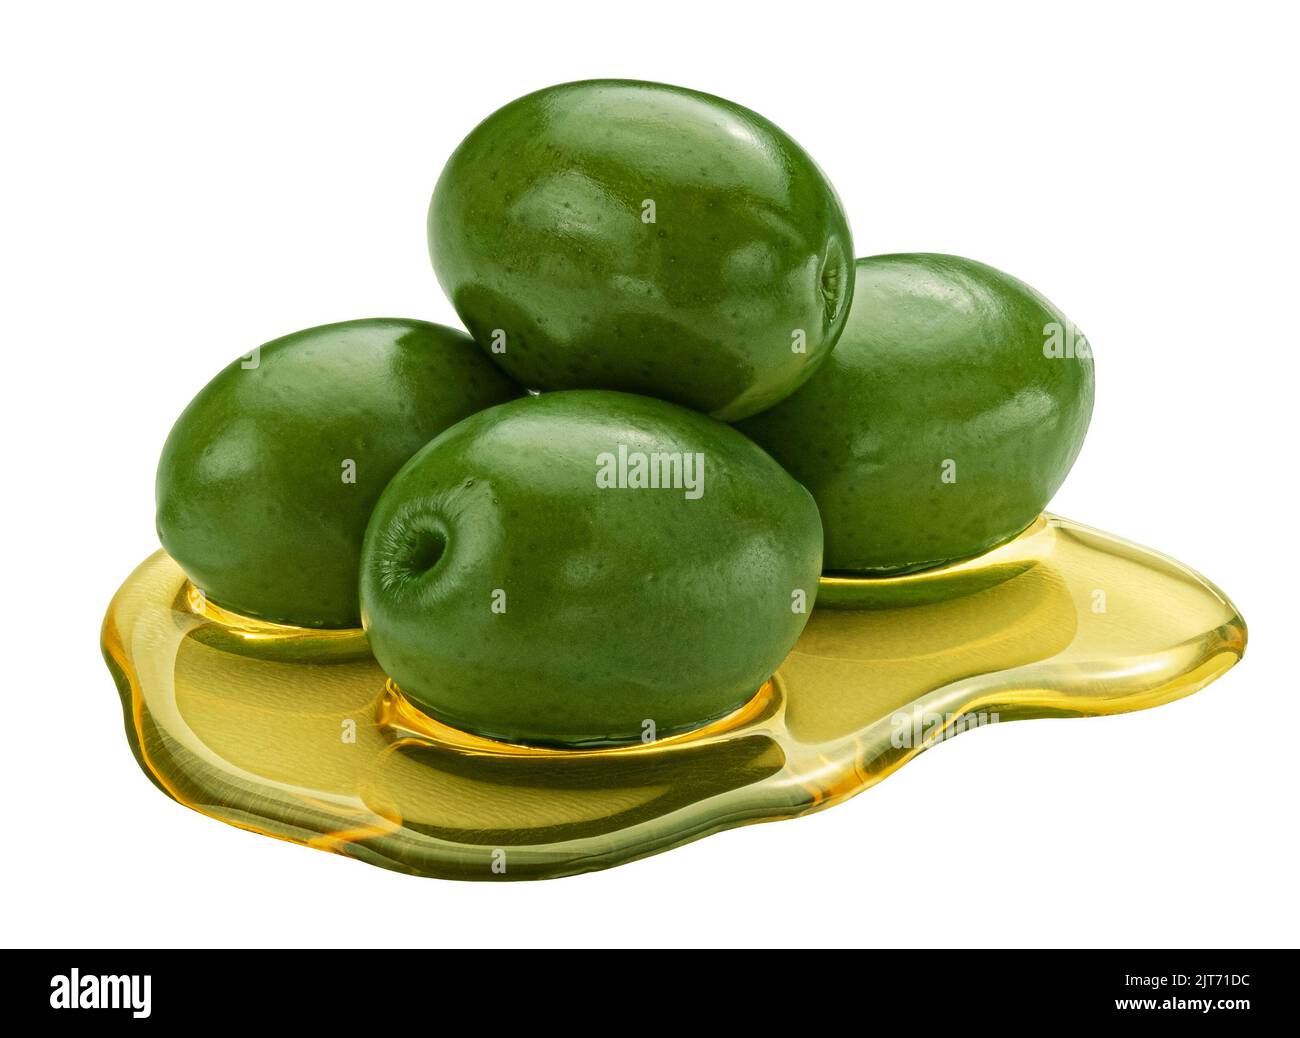 Aceitunas verdes con manchas de aceite virgen extra aisladas sobre fondo blanco Foto de stock